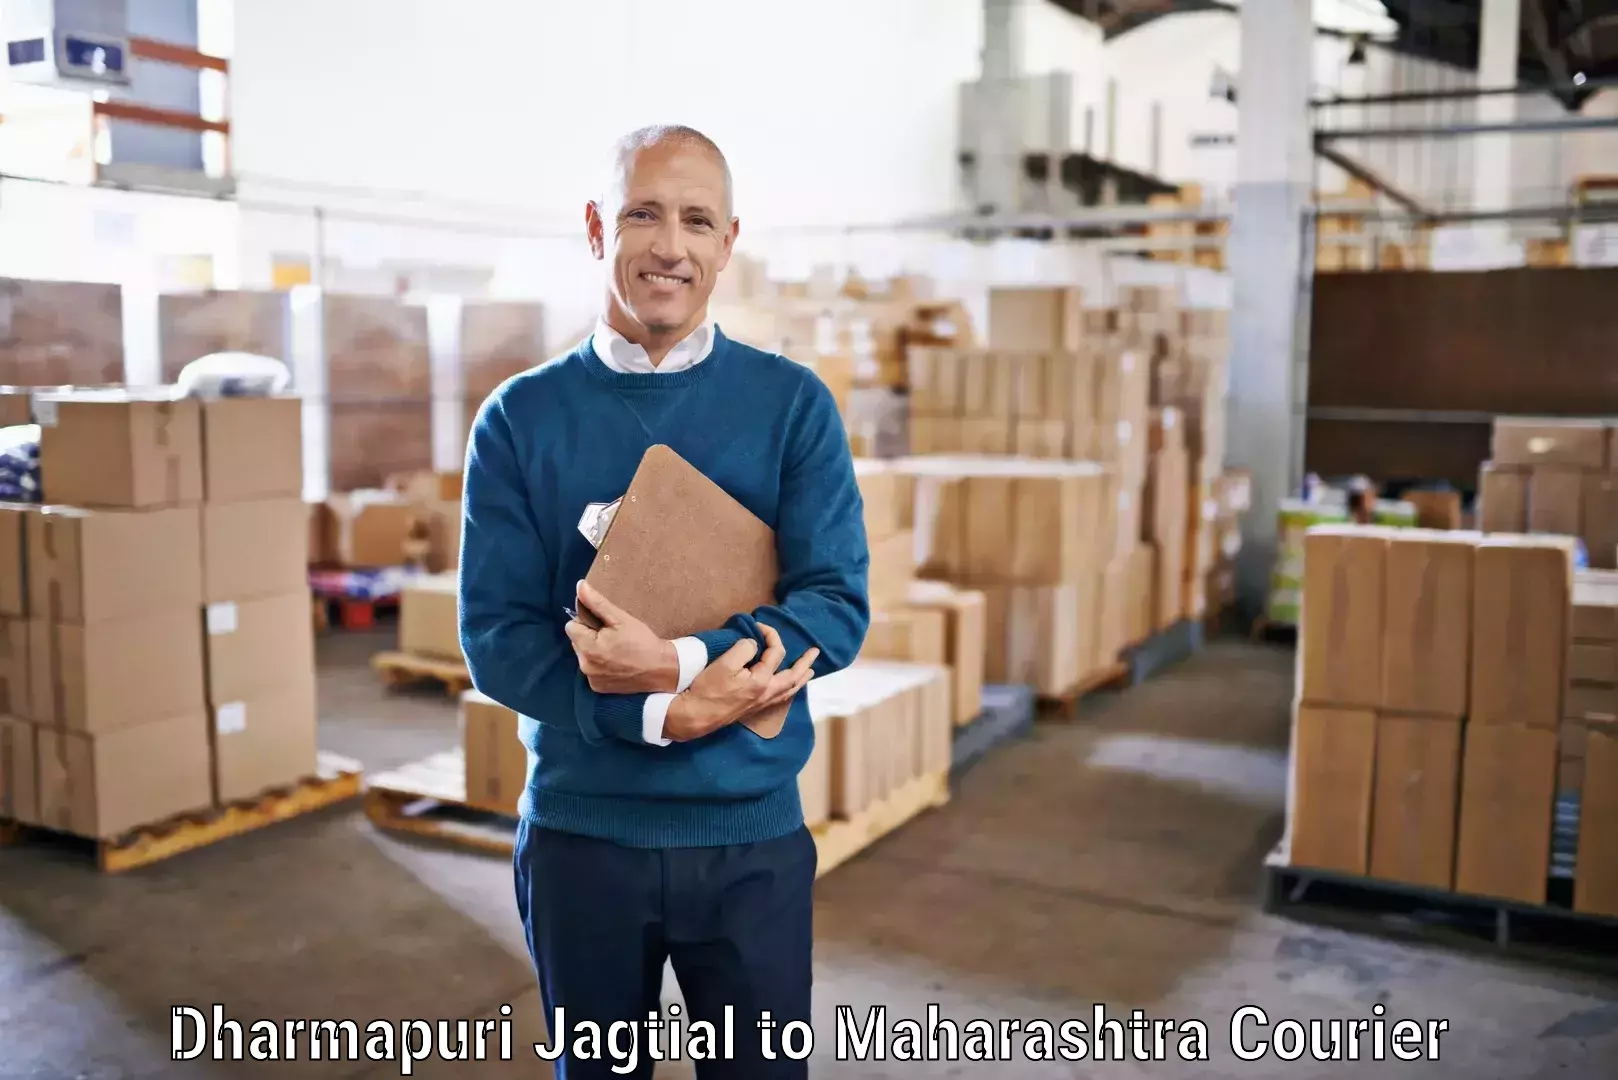 Scalable shipping solutions Dharmapuri Jagtial to Kurkumbh